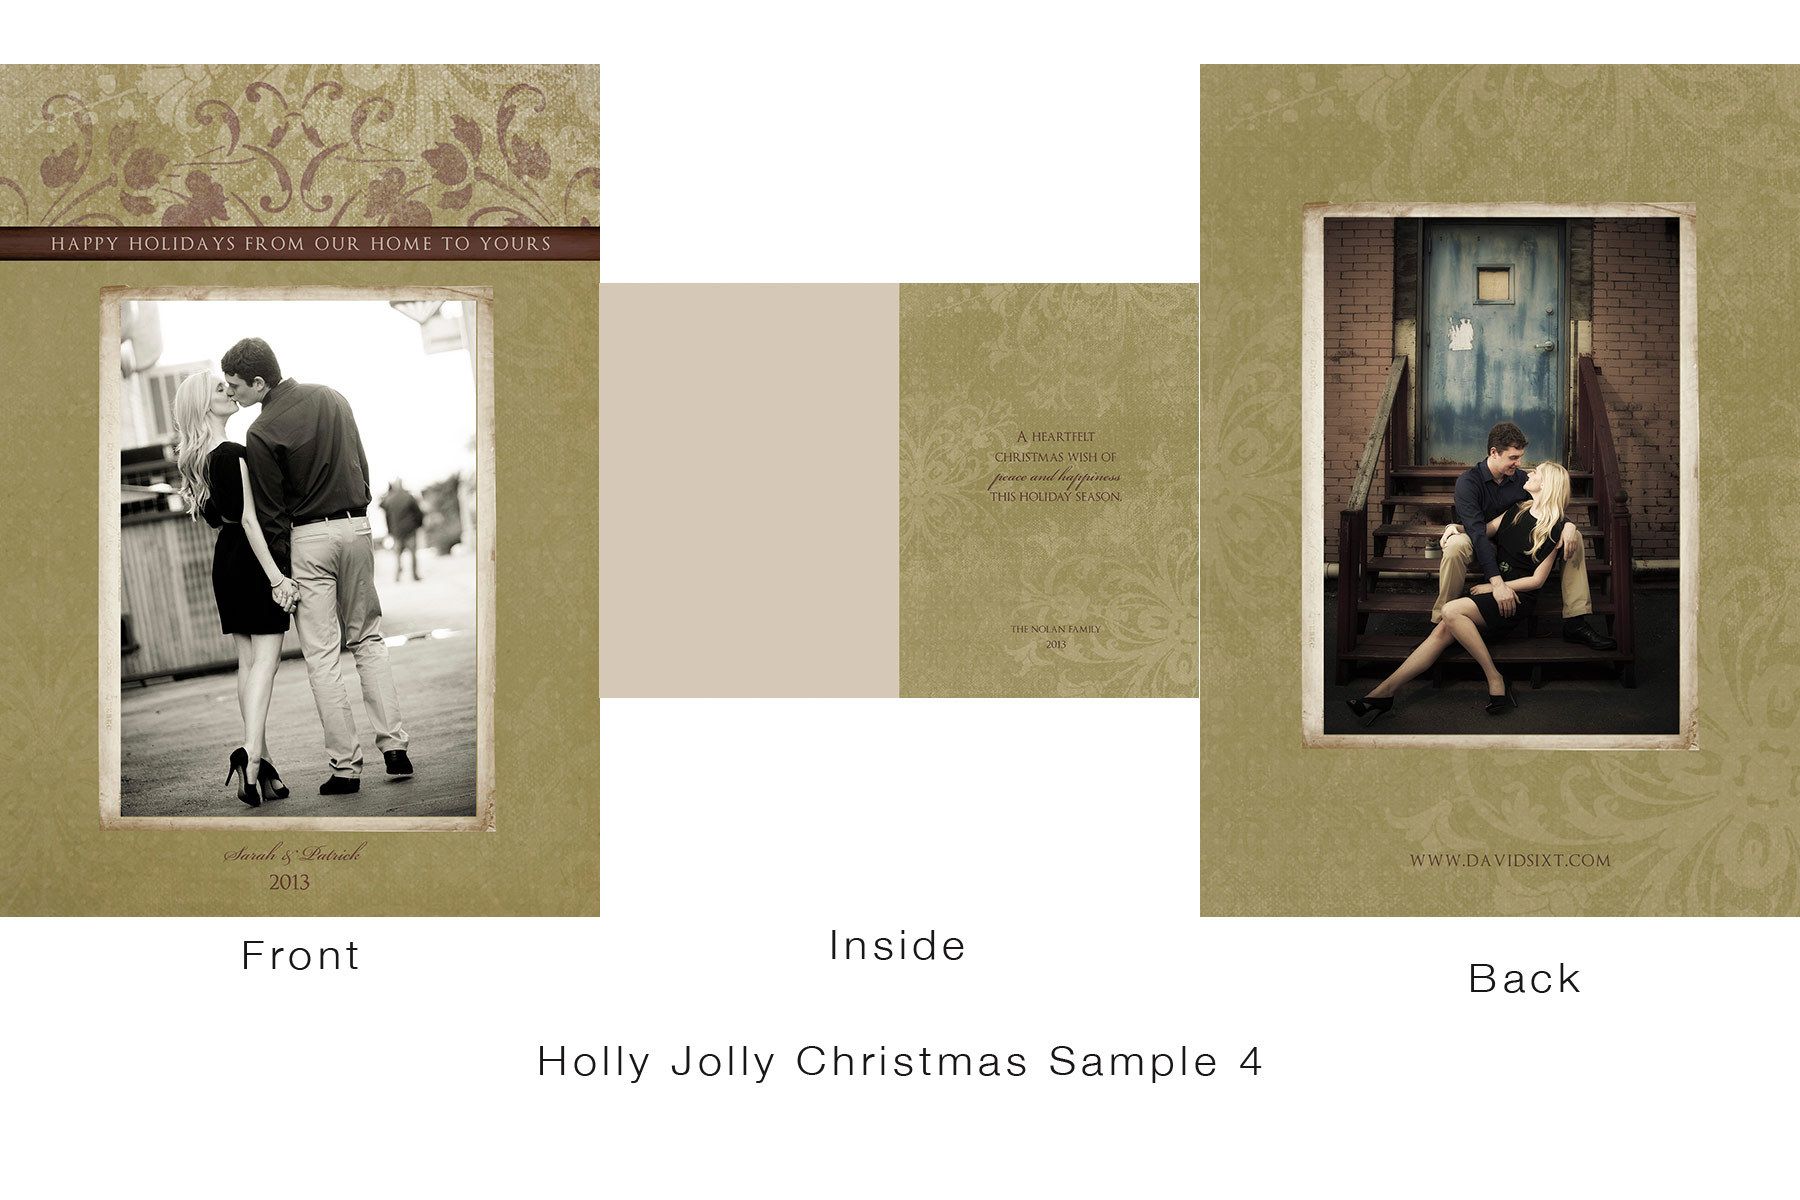 1holly_jolly_christmas_sample_4.jpg